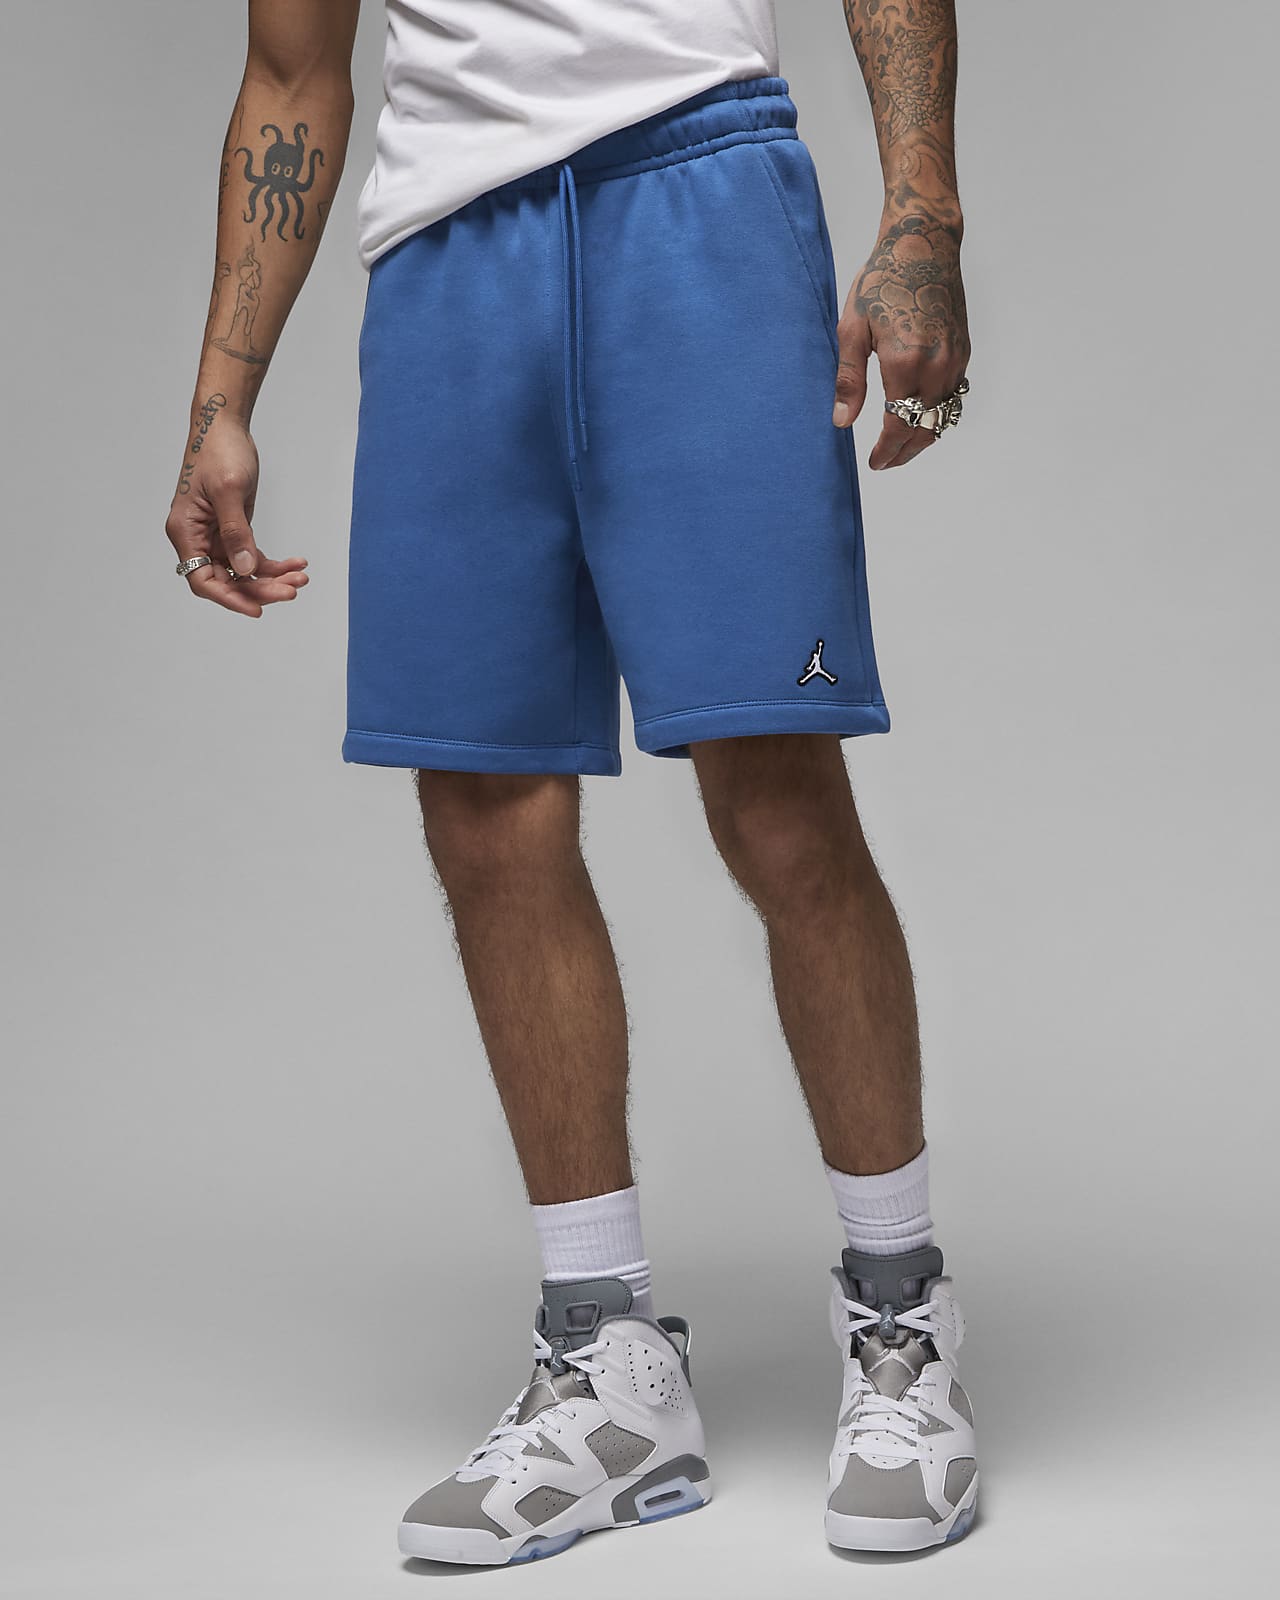 Erklæring i dag Døds kæbe Jordan Brooklyn Fleece Men's Shorts. Nike.com